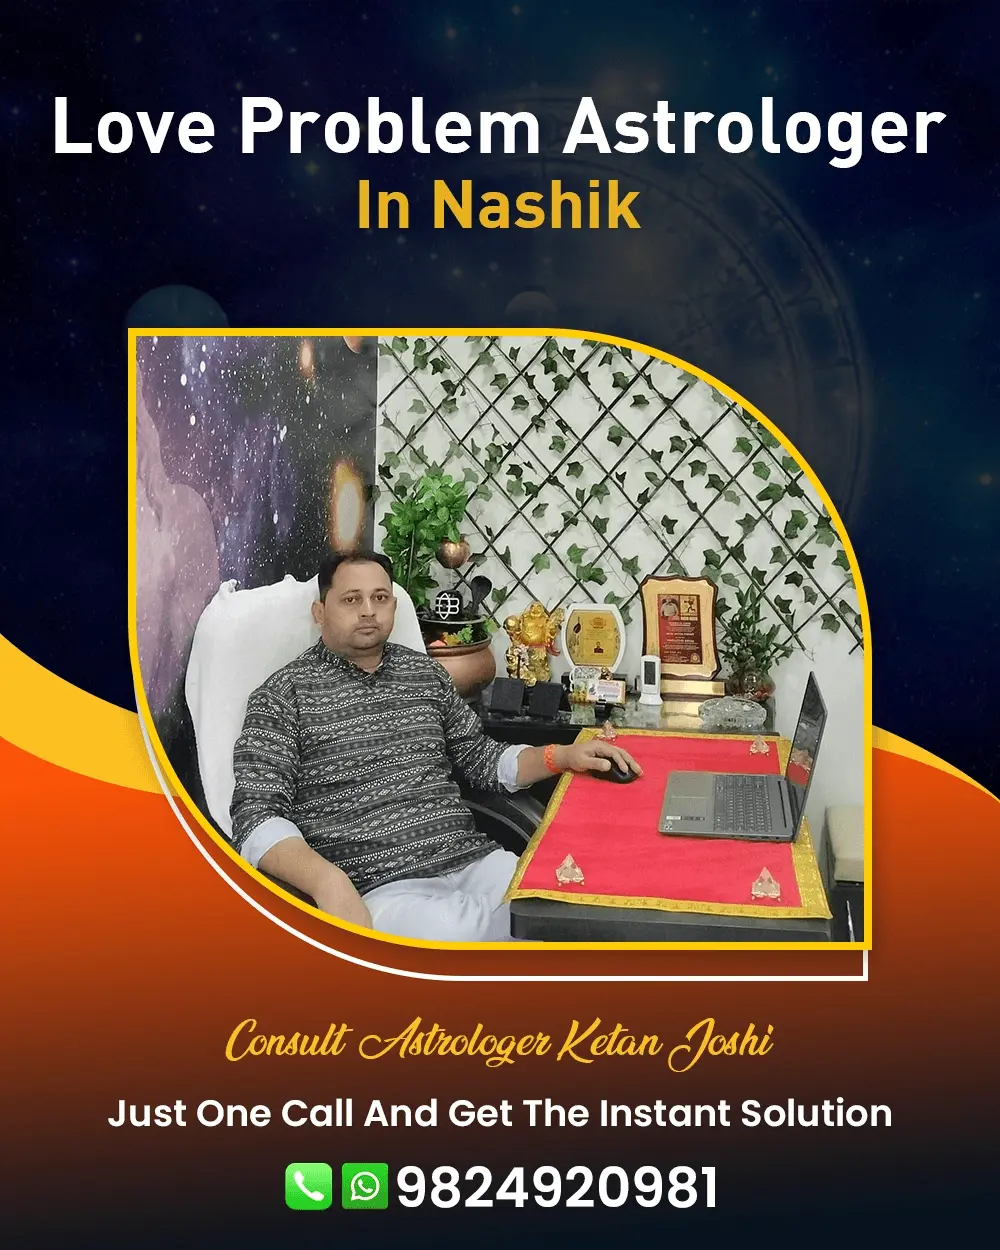 Love Problem Astrologer In Nashik